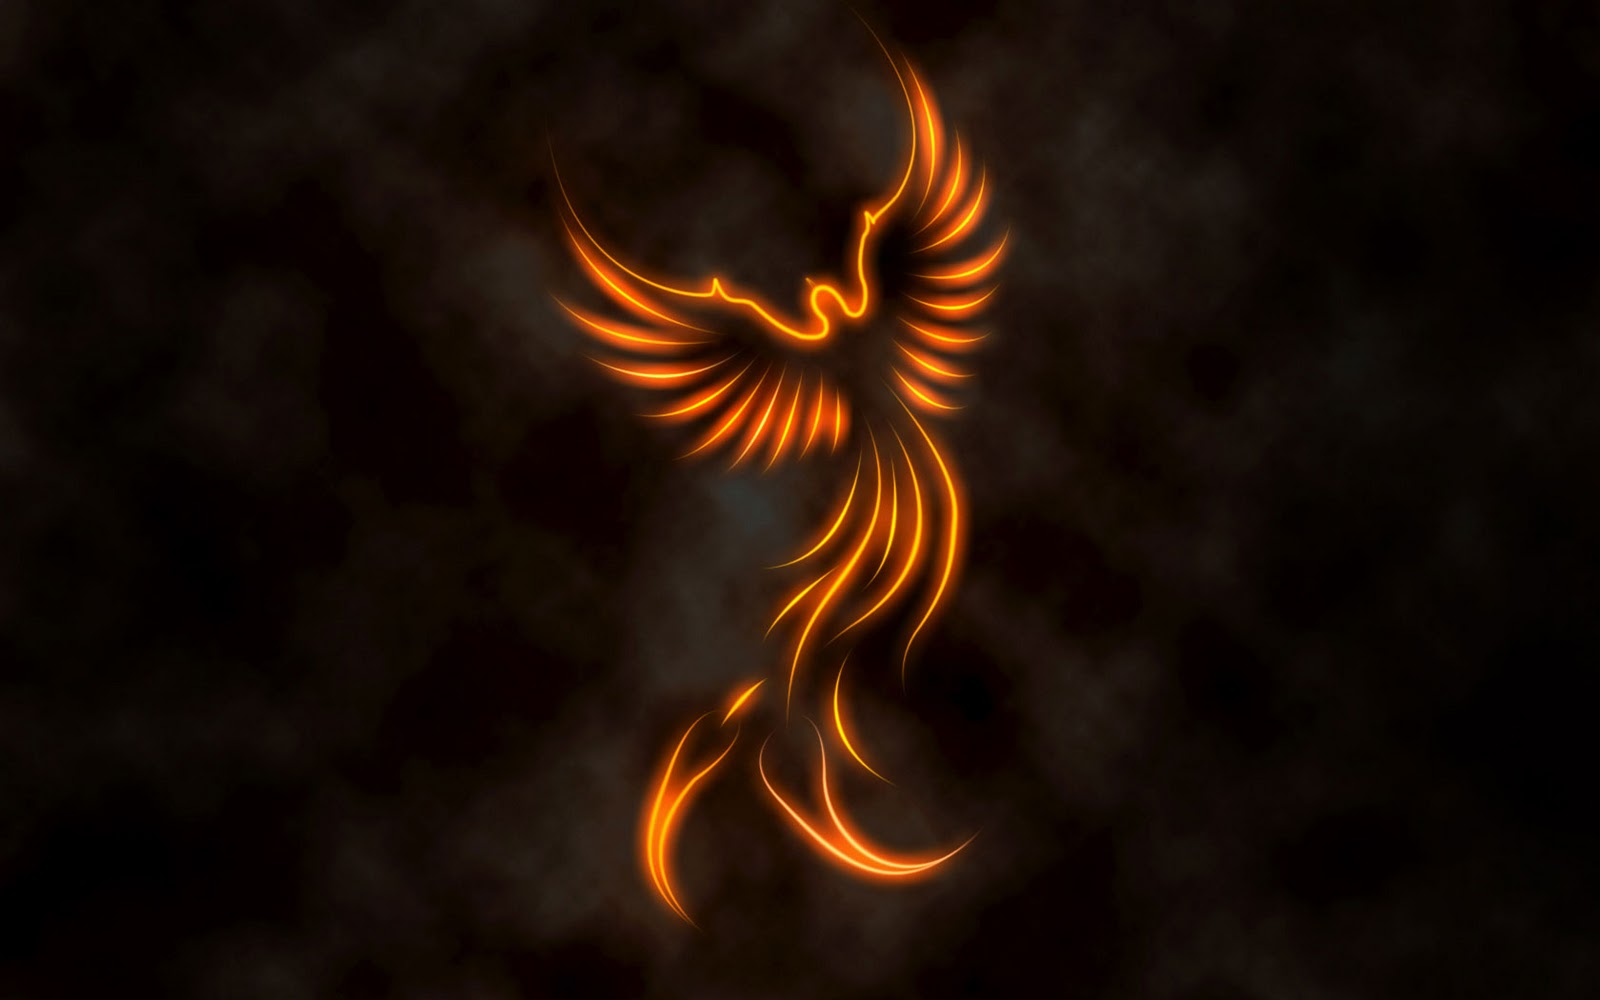 http://3.bp.blogspot.com/-g5Mwpkp1RR4/TyRV0OukEXI/AAAAAAAAAiE/mtBTPwjypic/s1600/Phoenix-Logo-Widescreen-Wallpaper.jpg